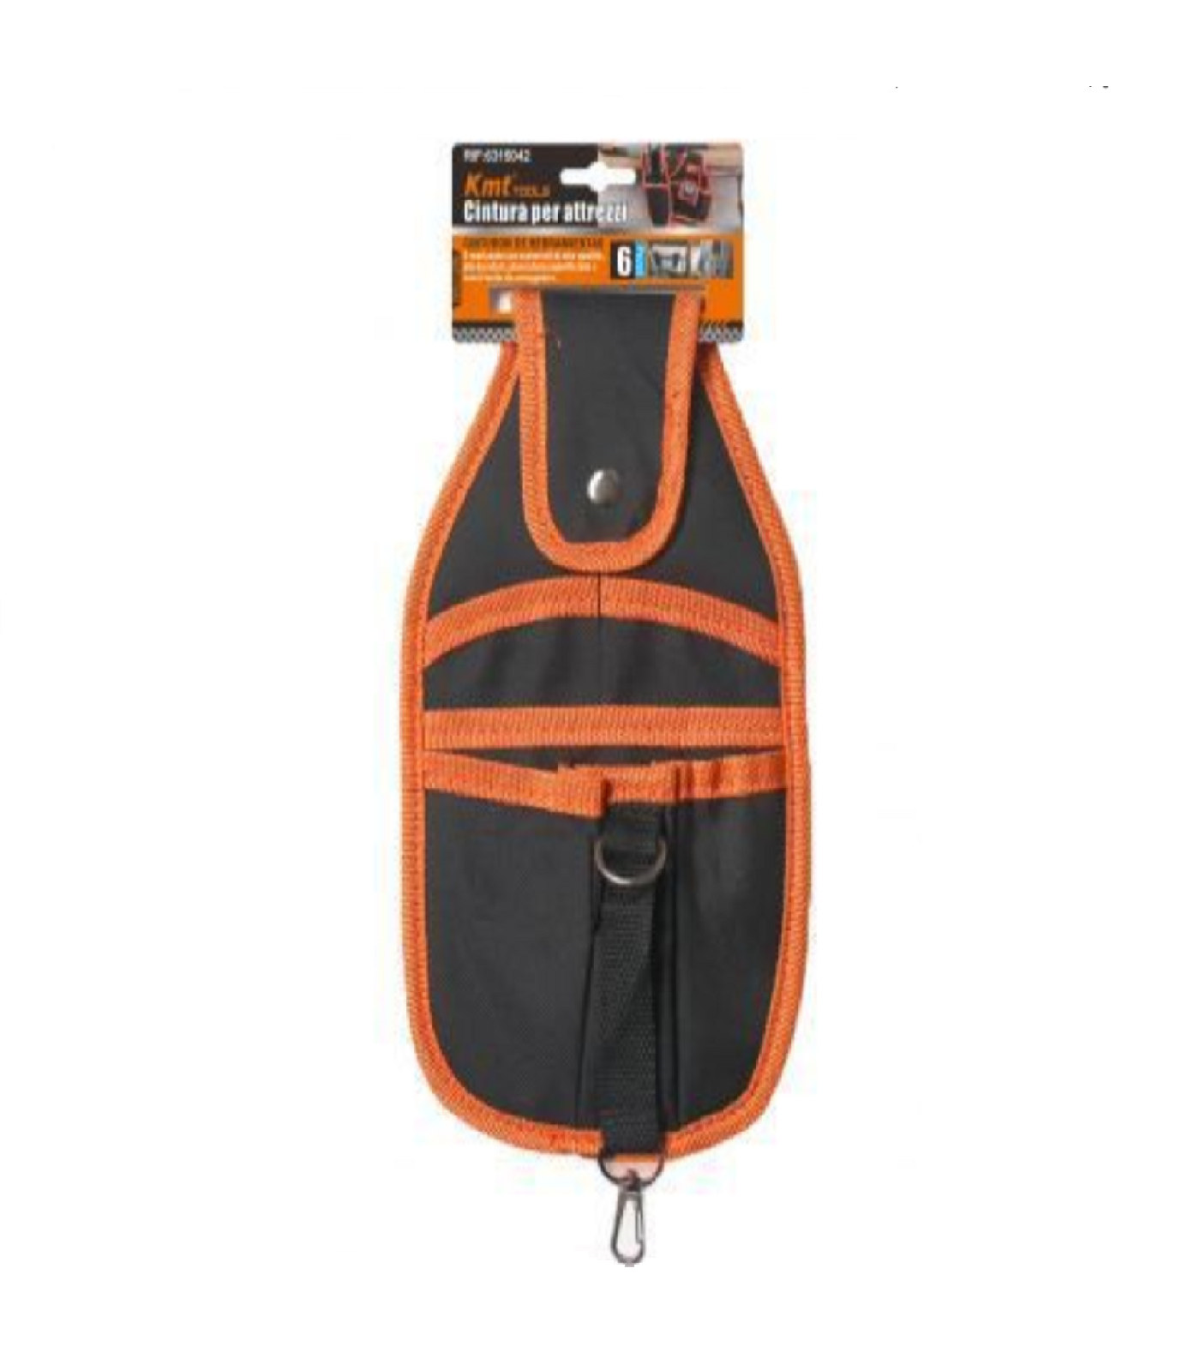 Bolsa porta herramientas para cinturón 26 x 16 cm color negro y naranja,  bolsillo para llaves, martillo, profesionales de la con